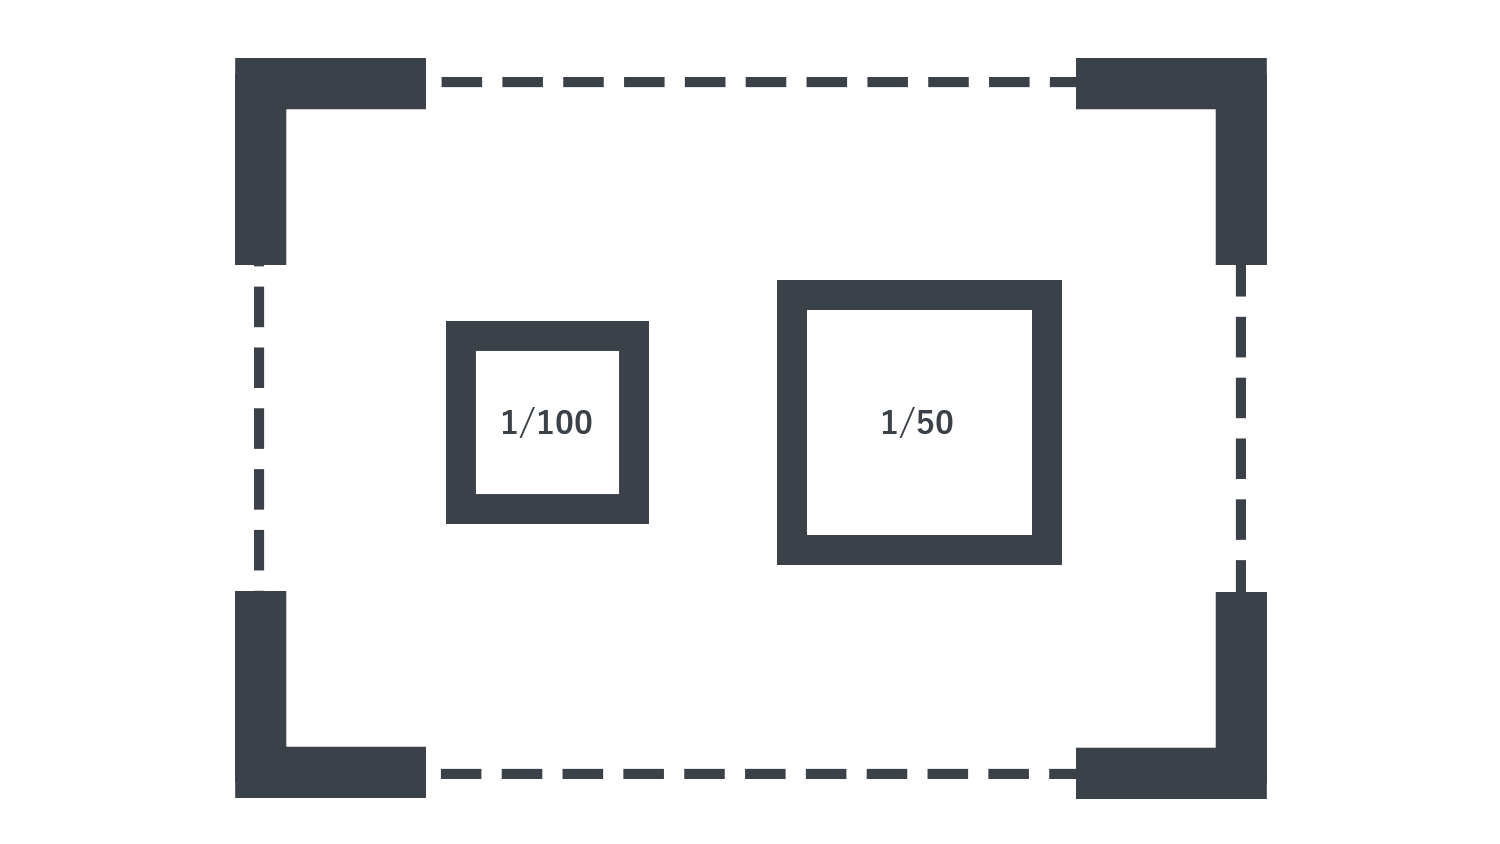 Vectorworksで「透視投影ビューをクロップするを有効にする」・「縮尺の違う図形を表示させる」方法について